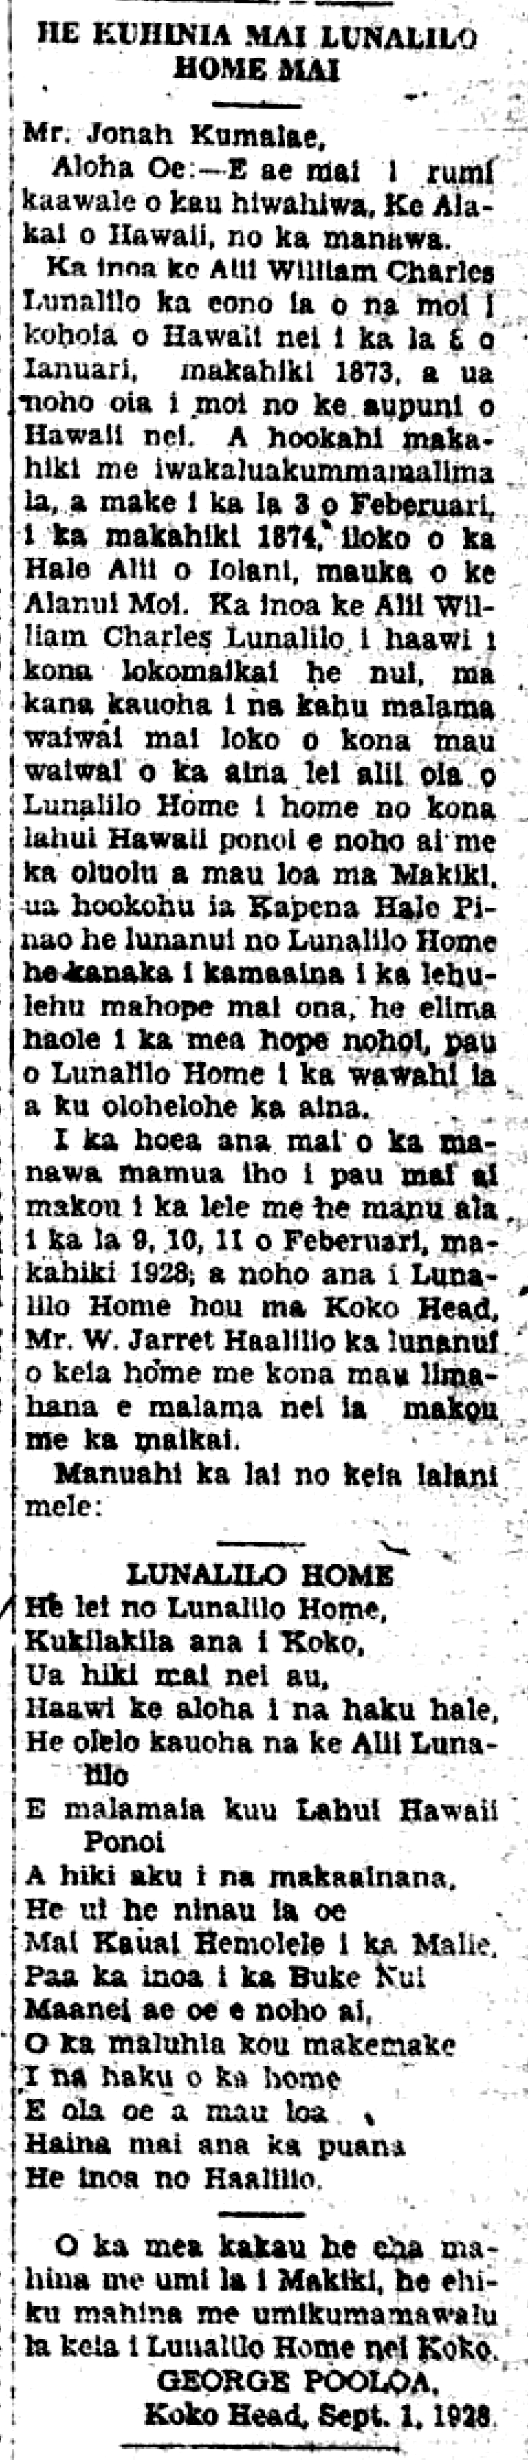 AlakaioHawaii_9_20_1928_3.png